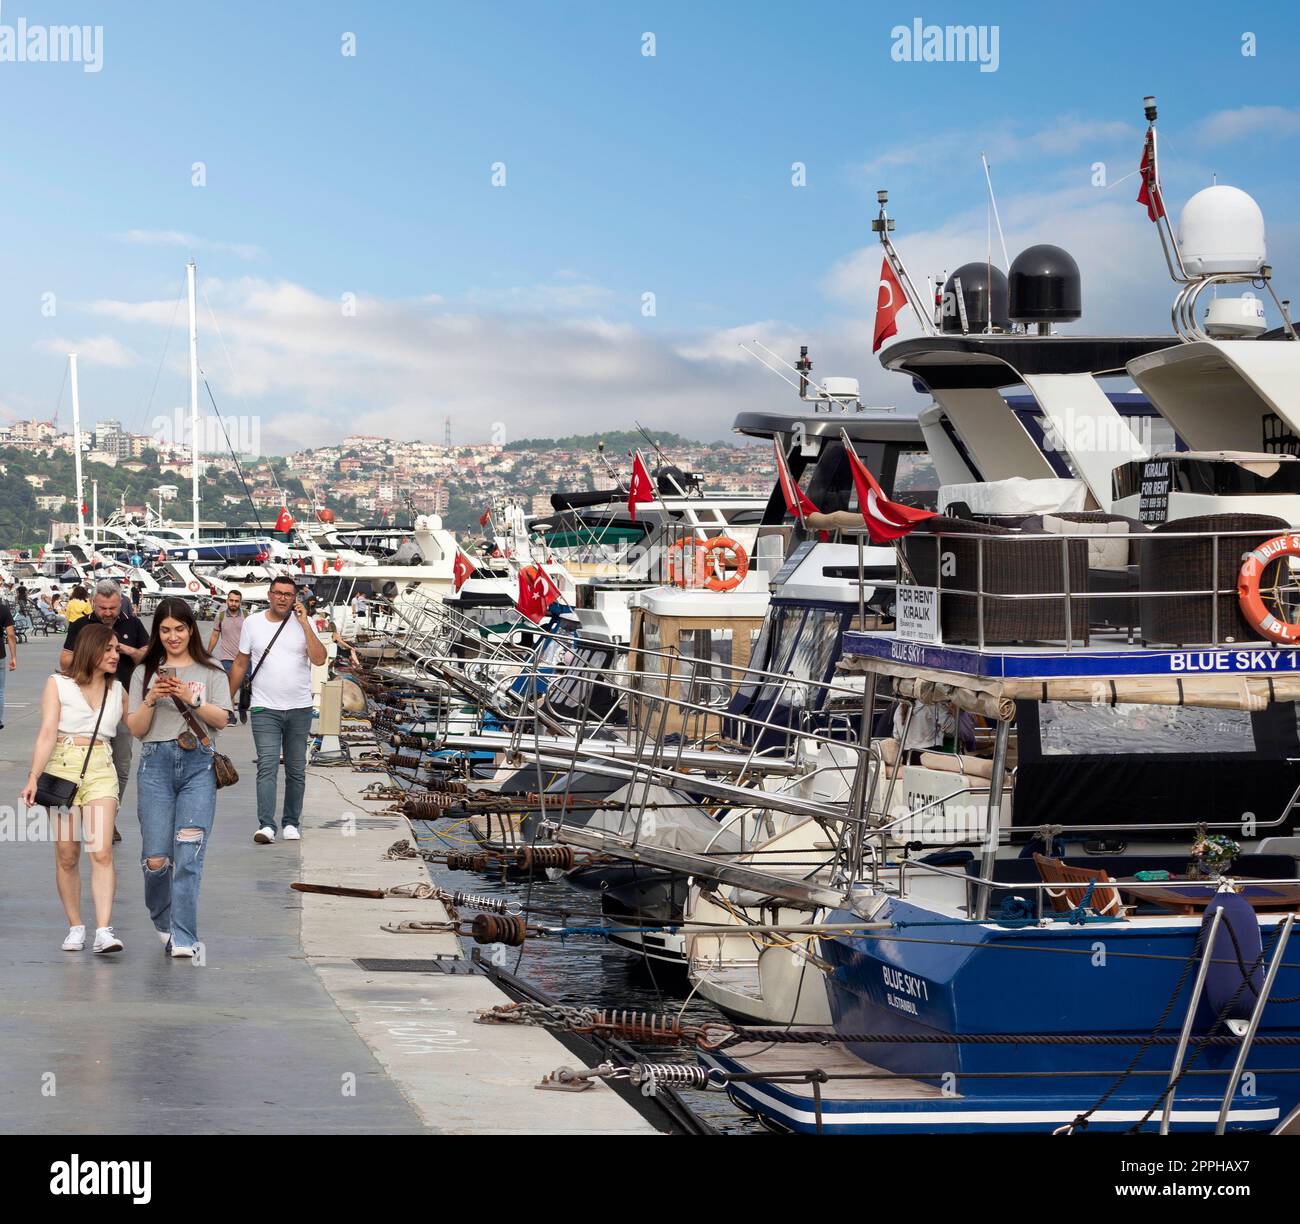 Persone che camminano lungo il Bosforo tra i quartieri di Bebek e Hisari, accanto a barche e yacht attraccati, Istanbul, Turchia Foto Stock